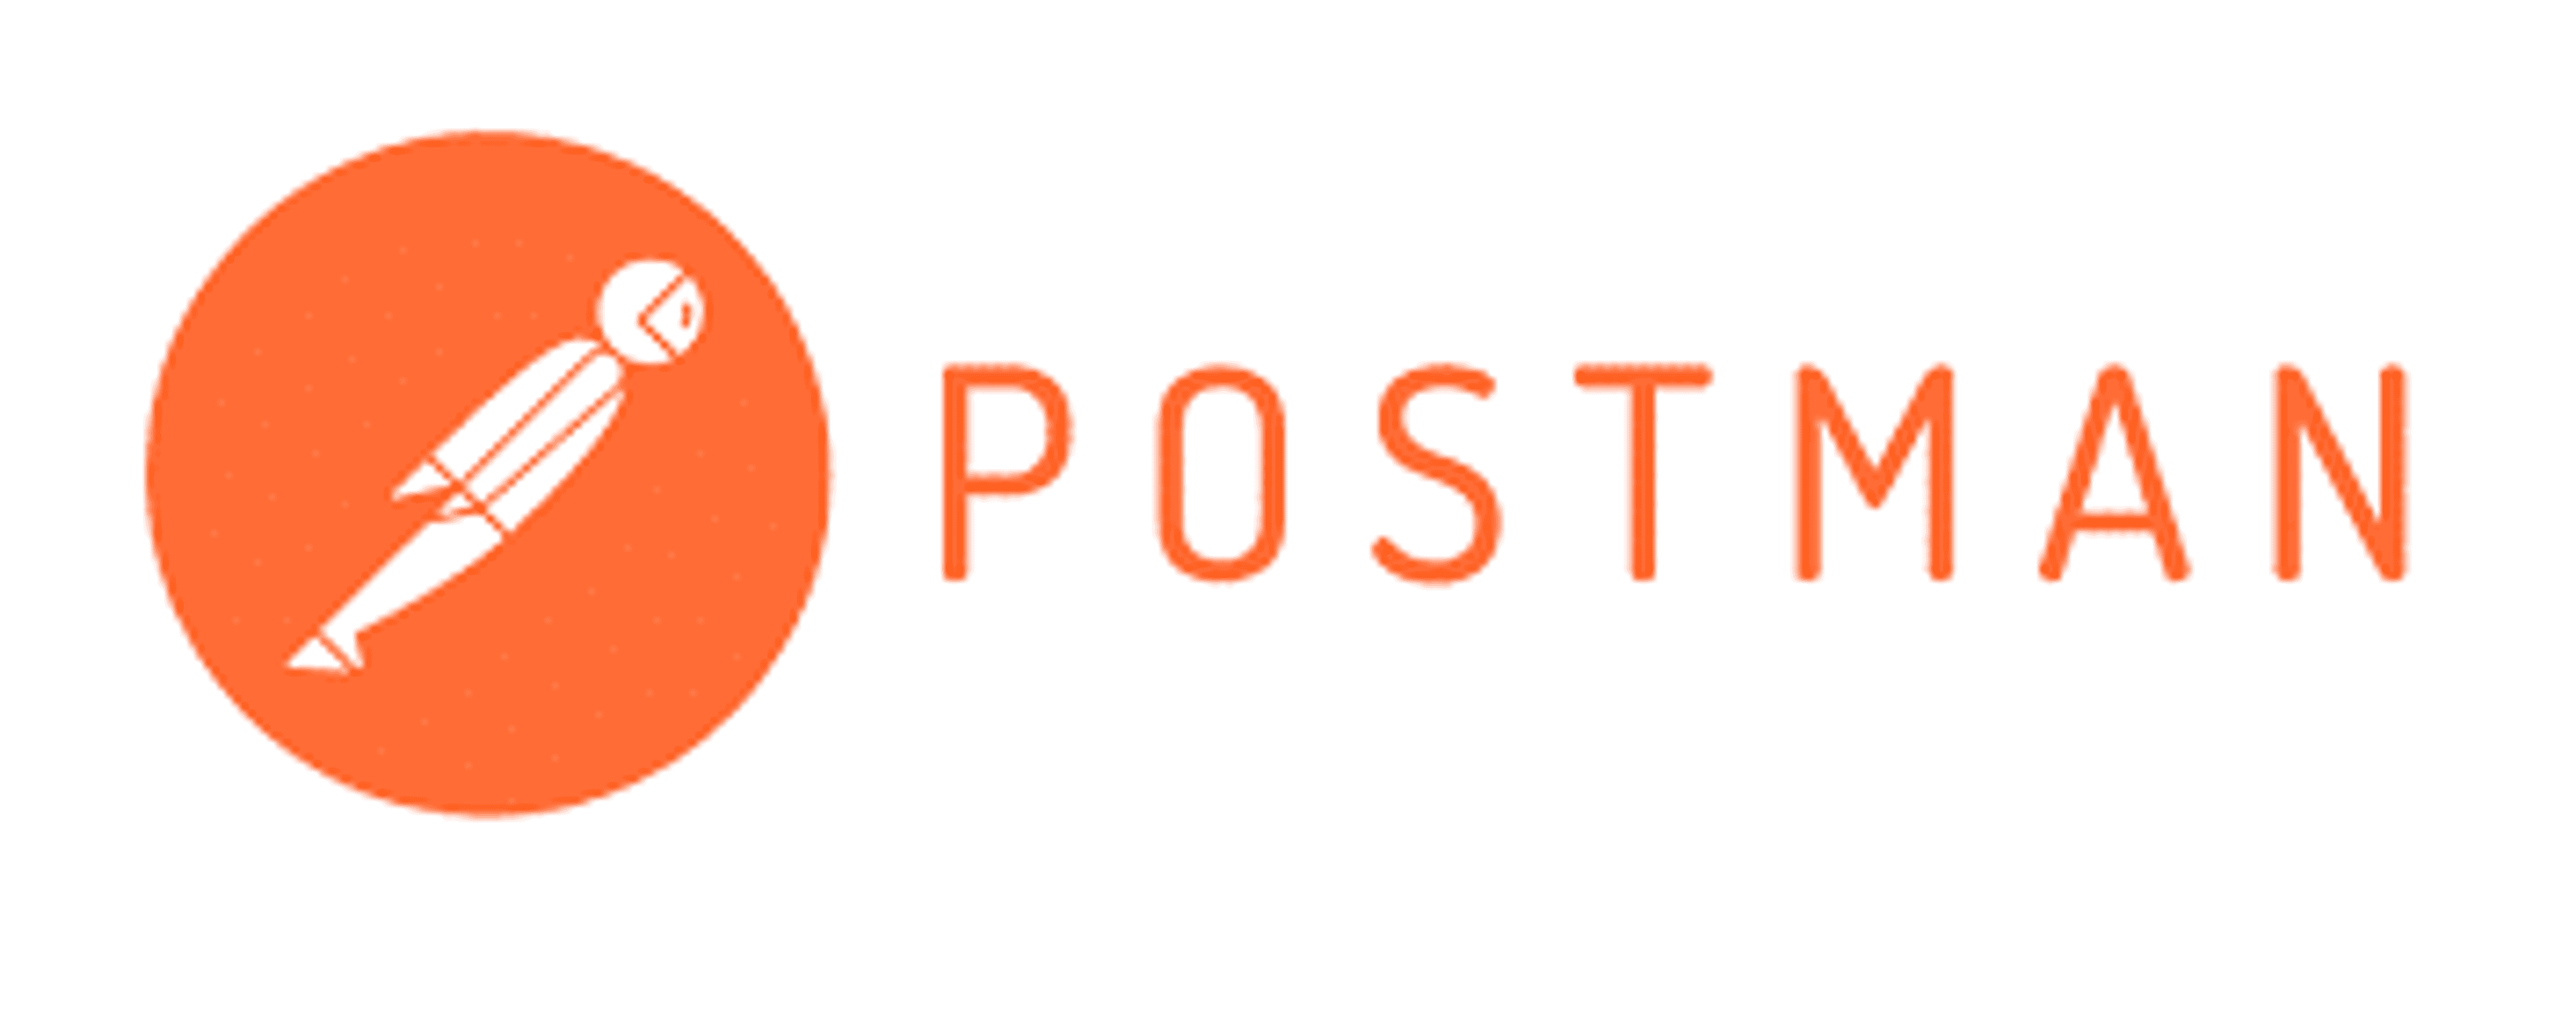 Postman est l'outil indispensable au développement web